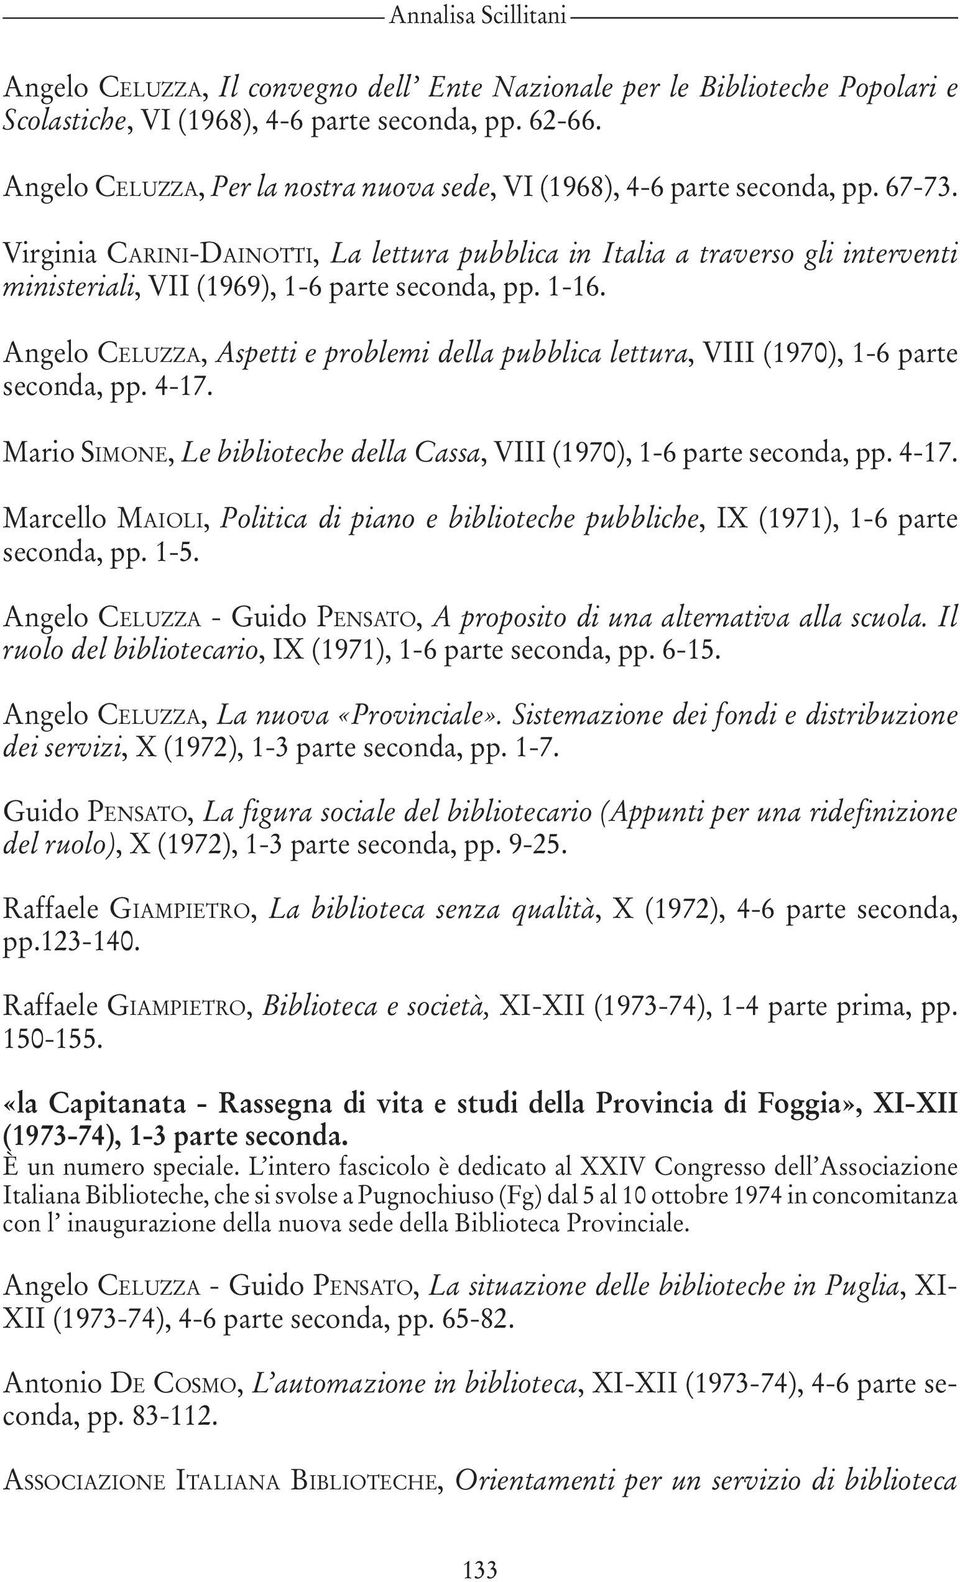 Virginia CARINI-DAINOTTI, La lettura pubblica in Italia a traverso gli interventi ministeriali, VII (1969), 1-6 parte seconda, pp. 1-16.